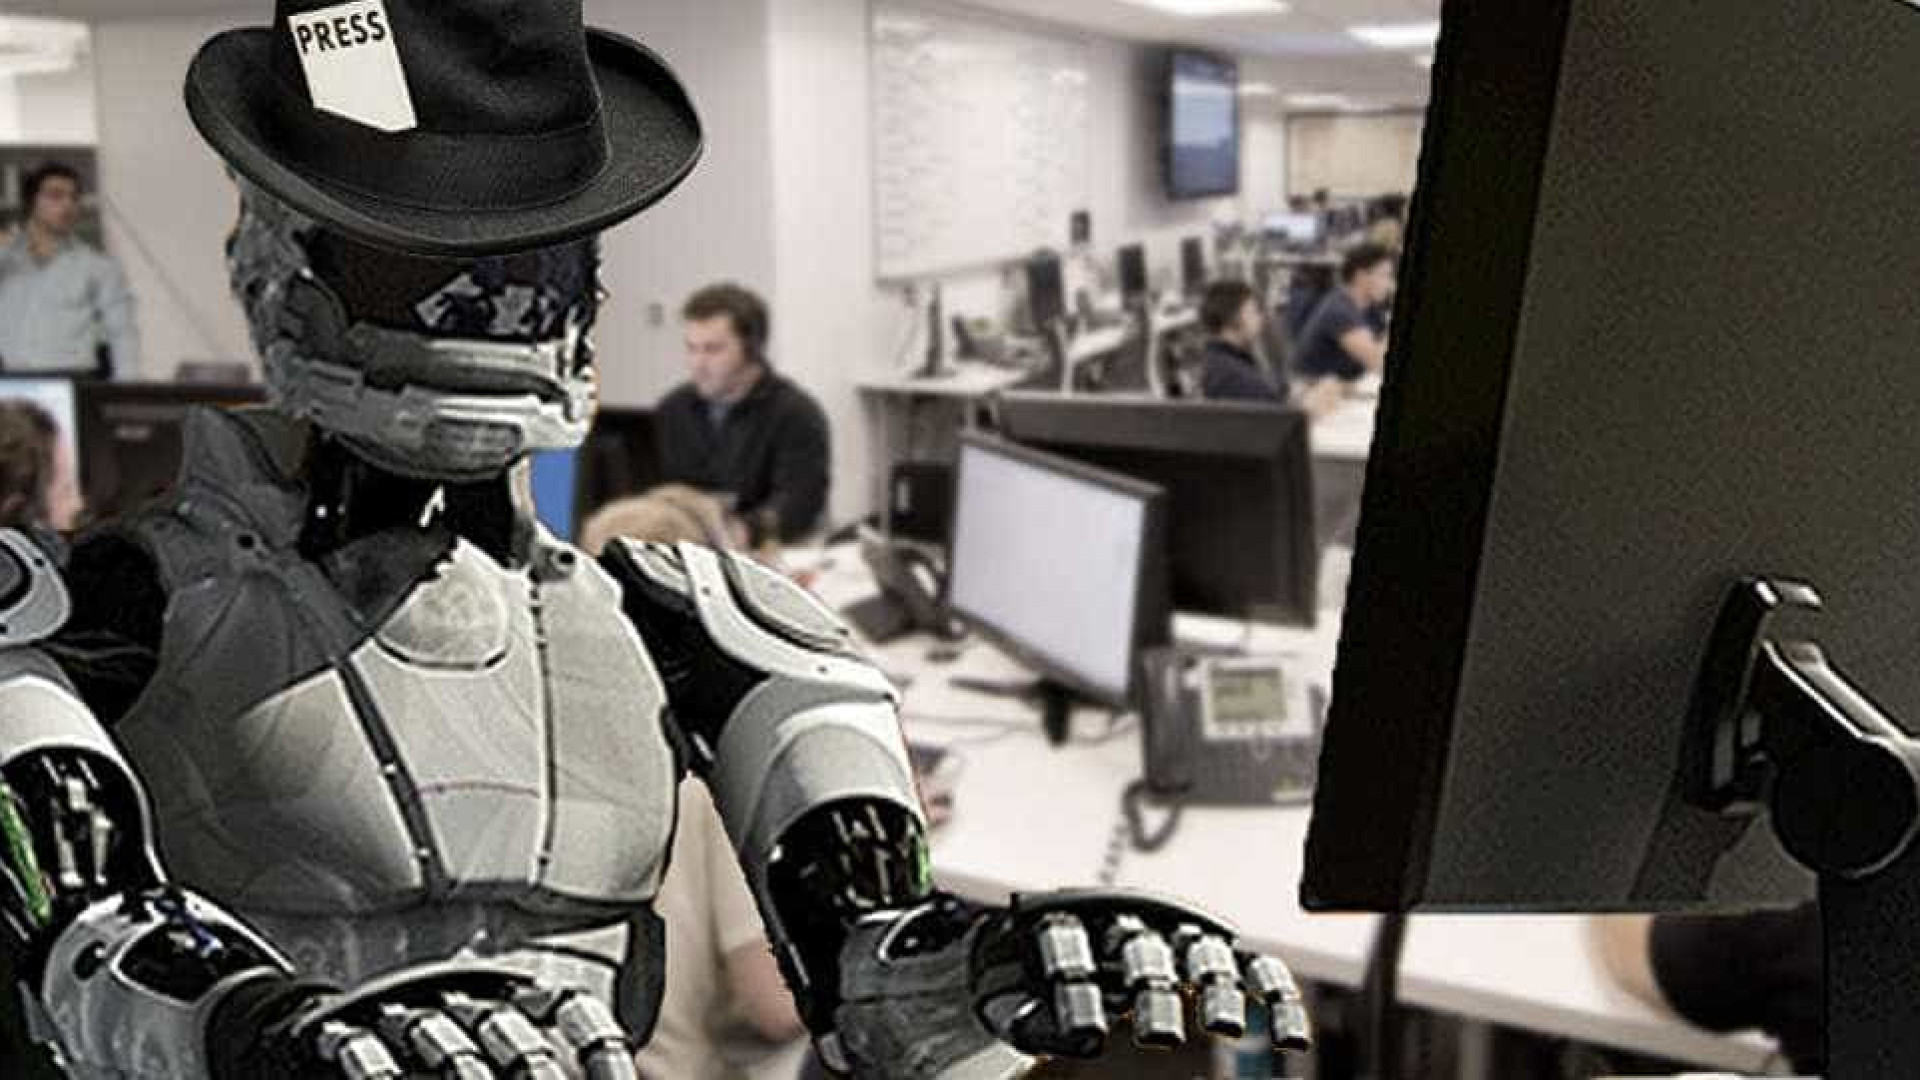 Metade dos empregos no Brasil já poderiam ser substituídos por robôs